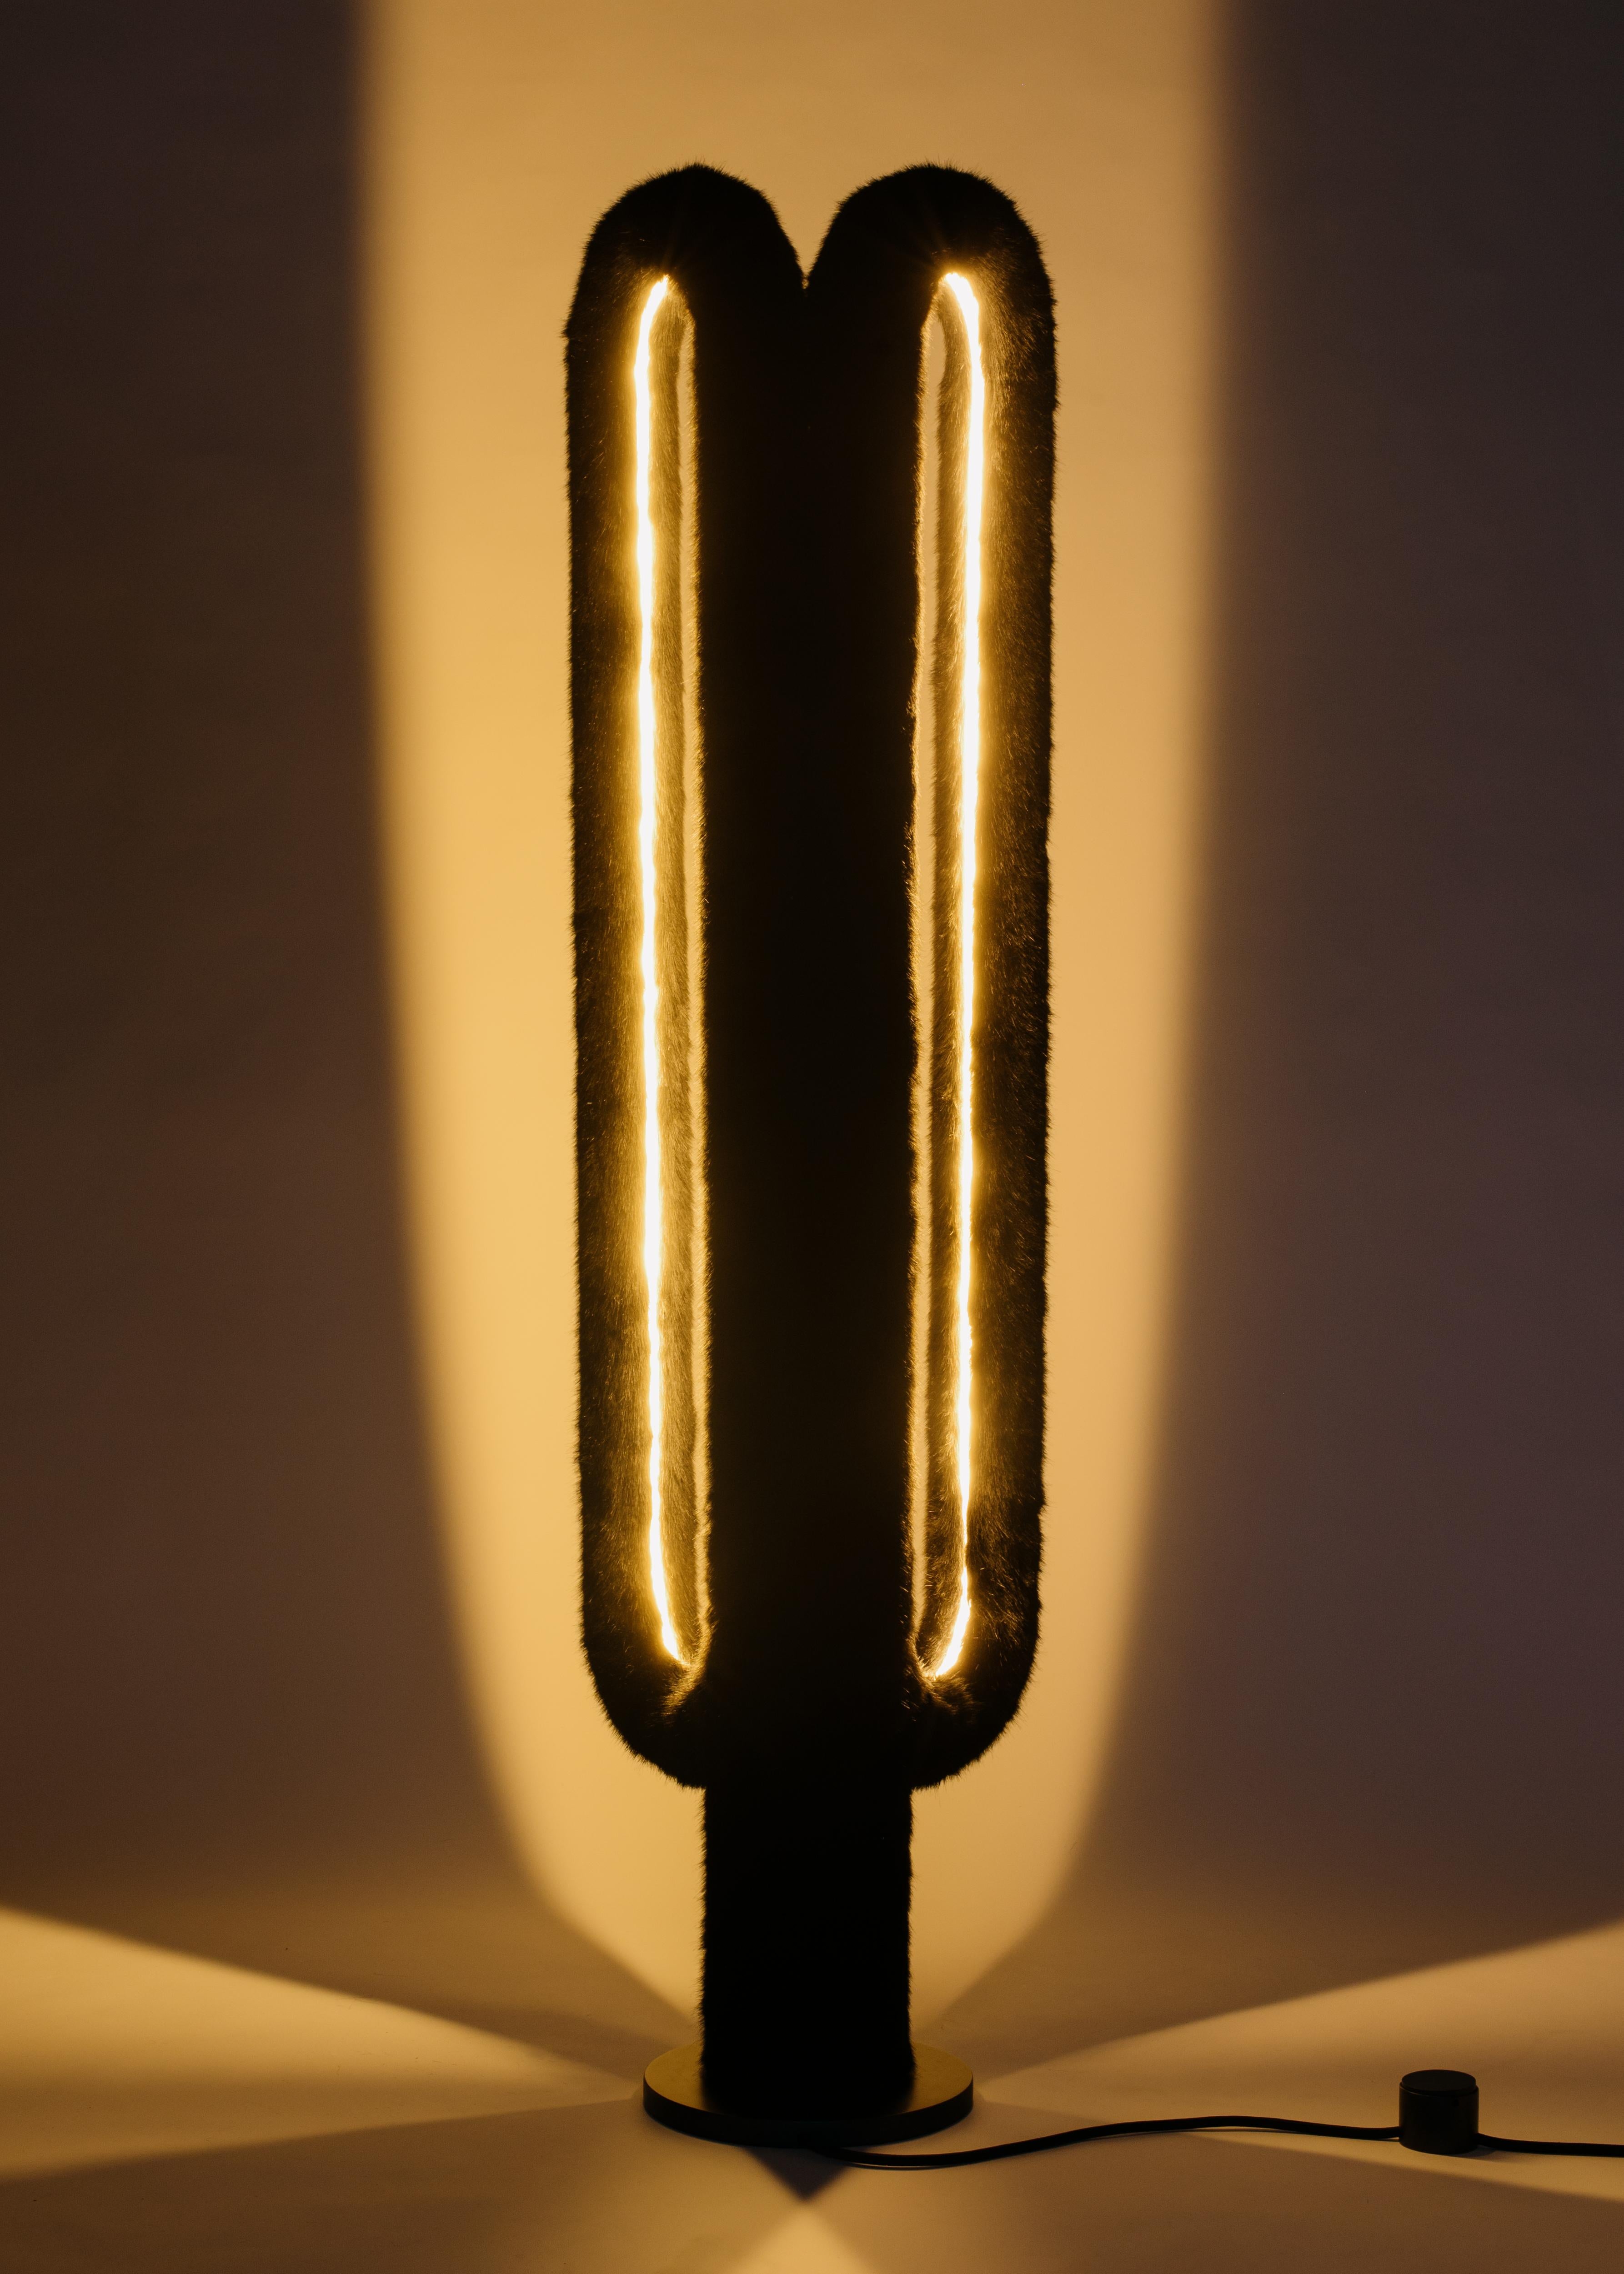 Le lampadaire Artiodactyl présente deux boucles cylindriques debout de fourrure illuminée. Ils brillent de l'intérieur de leurs contours, créant des poches de lumière jumelles qui accentuent leur symétrie et ricochent dans une pièce. La lampe